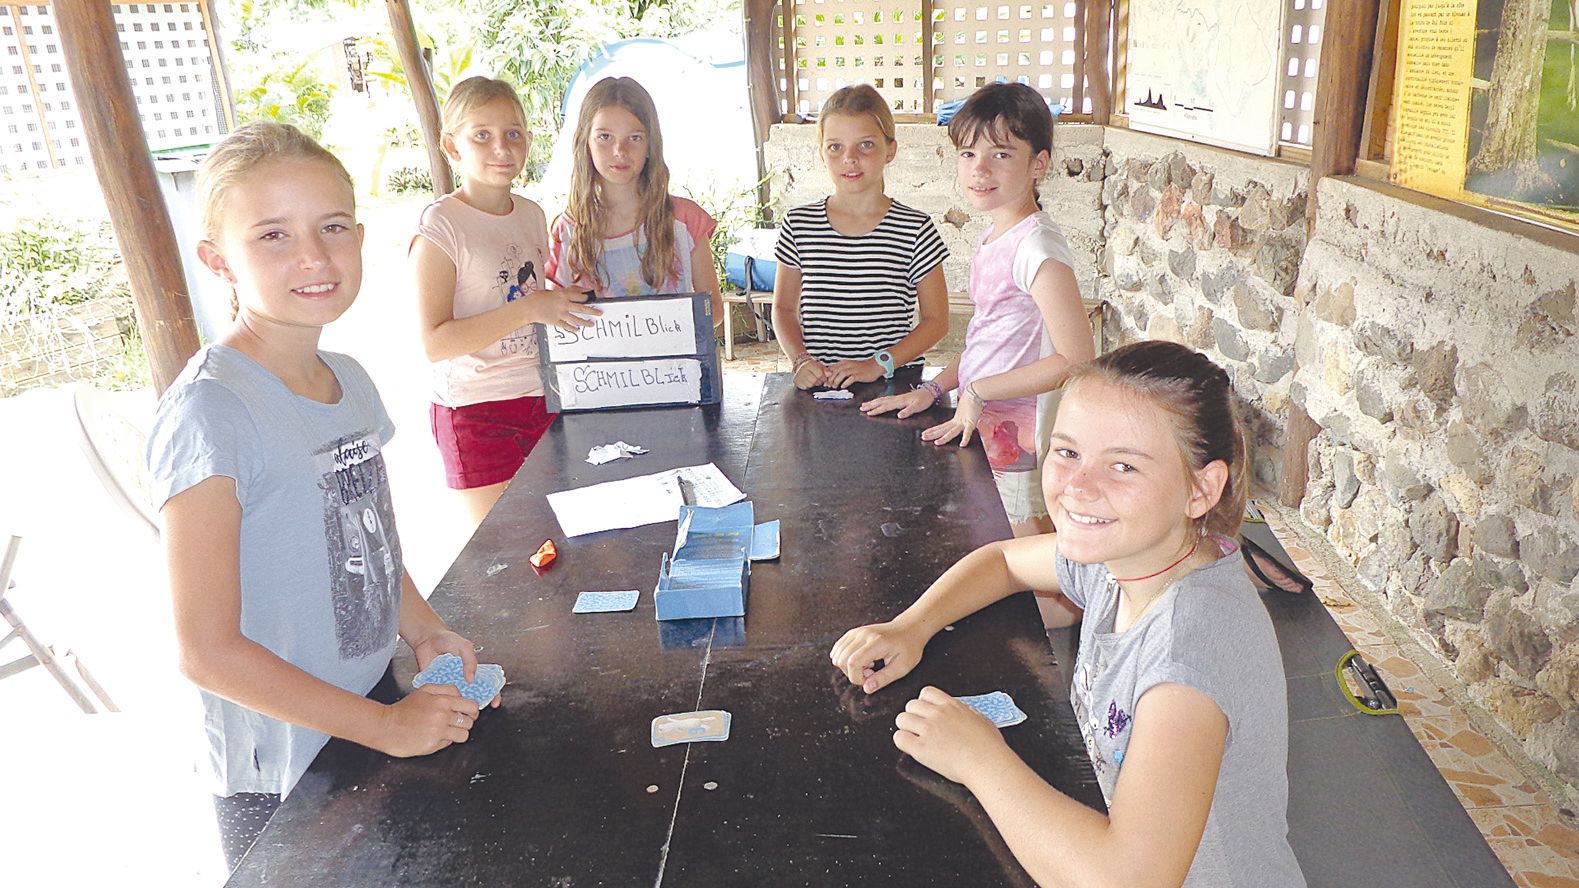 Entre deux sorties, les participantes ont joué aux cartes et aux petits questionnaires.